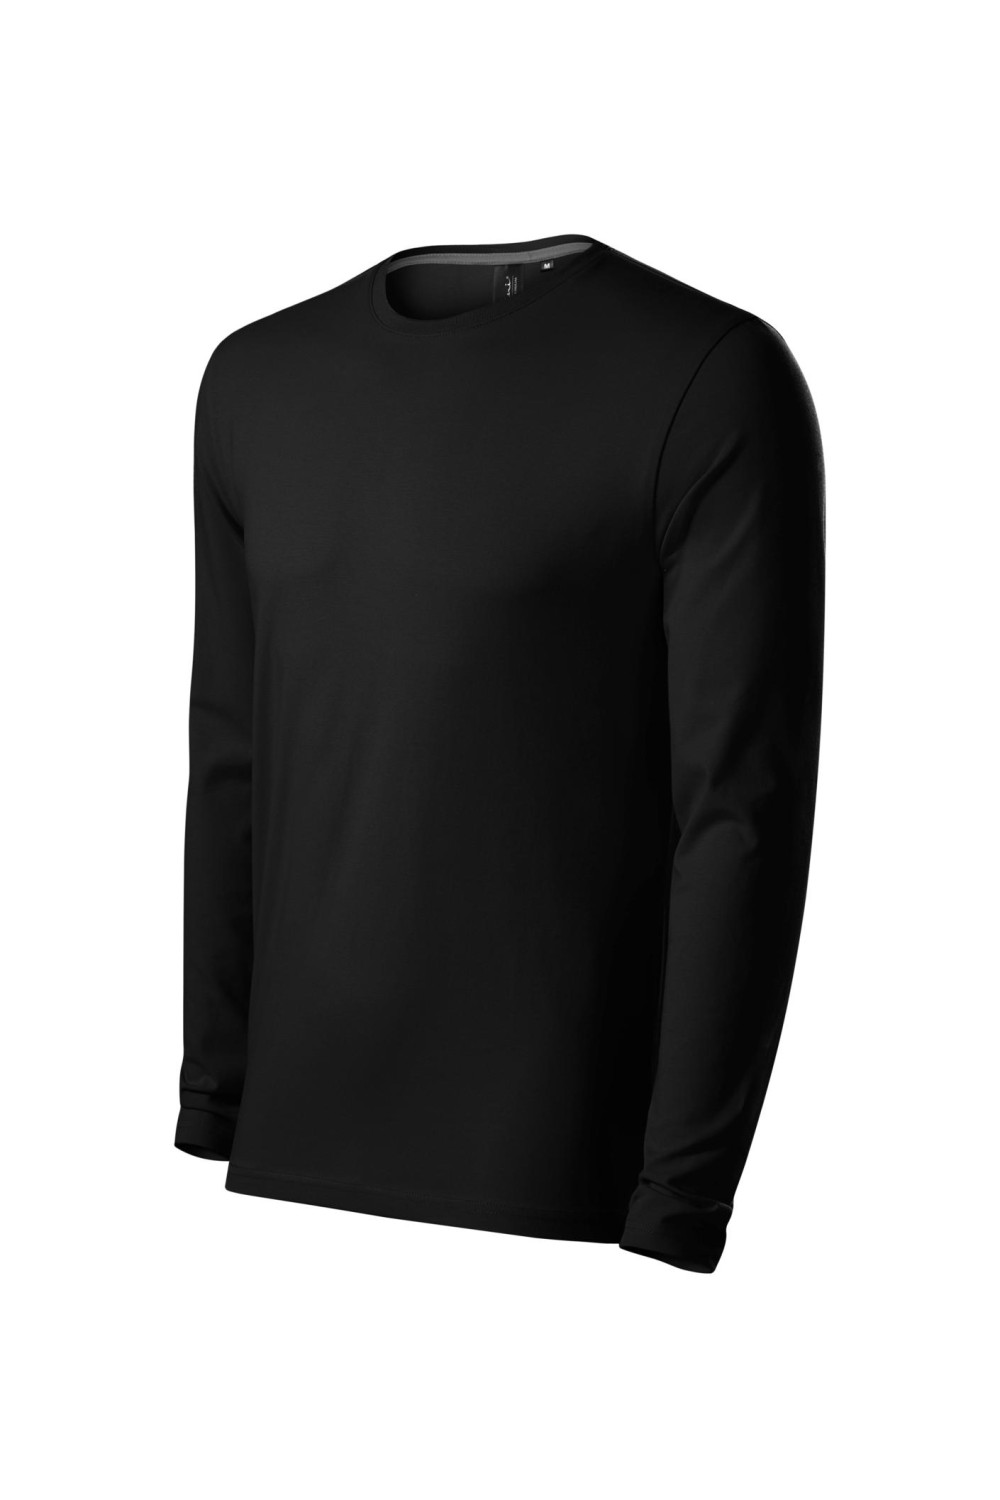 BRAVE 155 MALFINI ADLER Koszulka męska fitness z długim rękawem bawełna z elastanem czarny